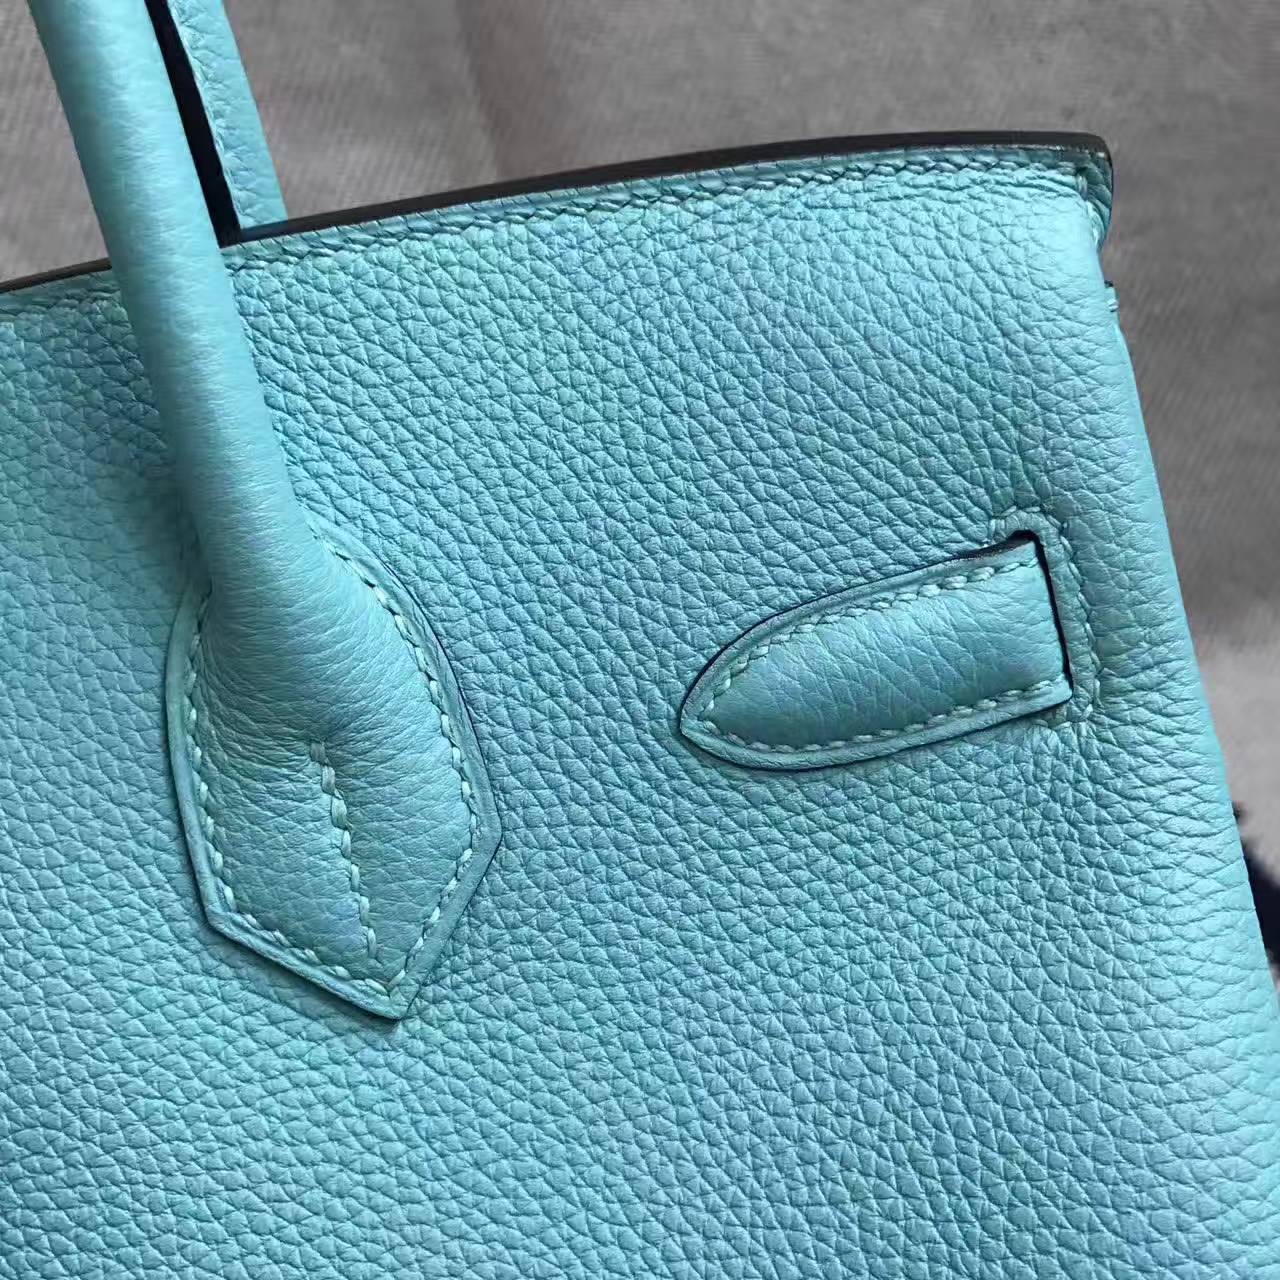 On Sale Hermes 3P Blue Attol Togo Calfskin Leather Birkin Bag 30cm